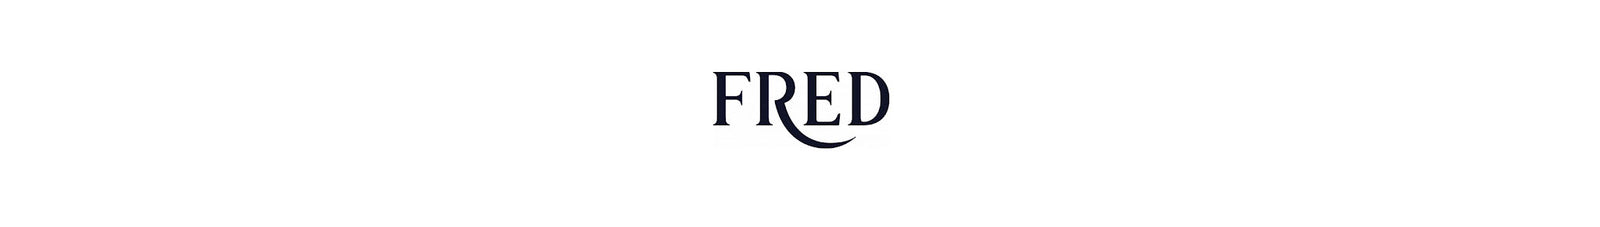 Fred Tagged fg50012u - Designer Eyes